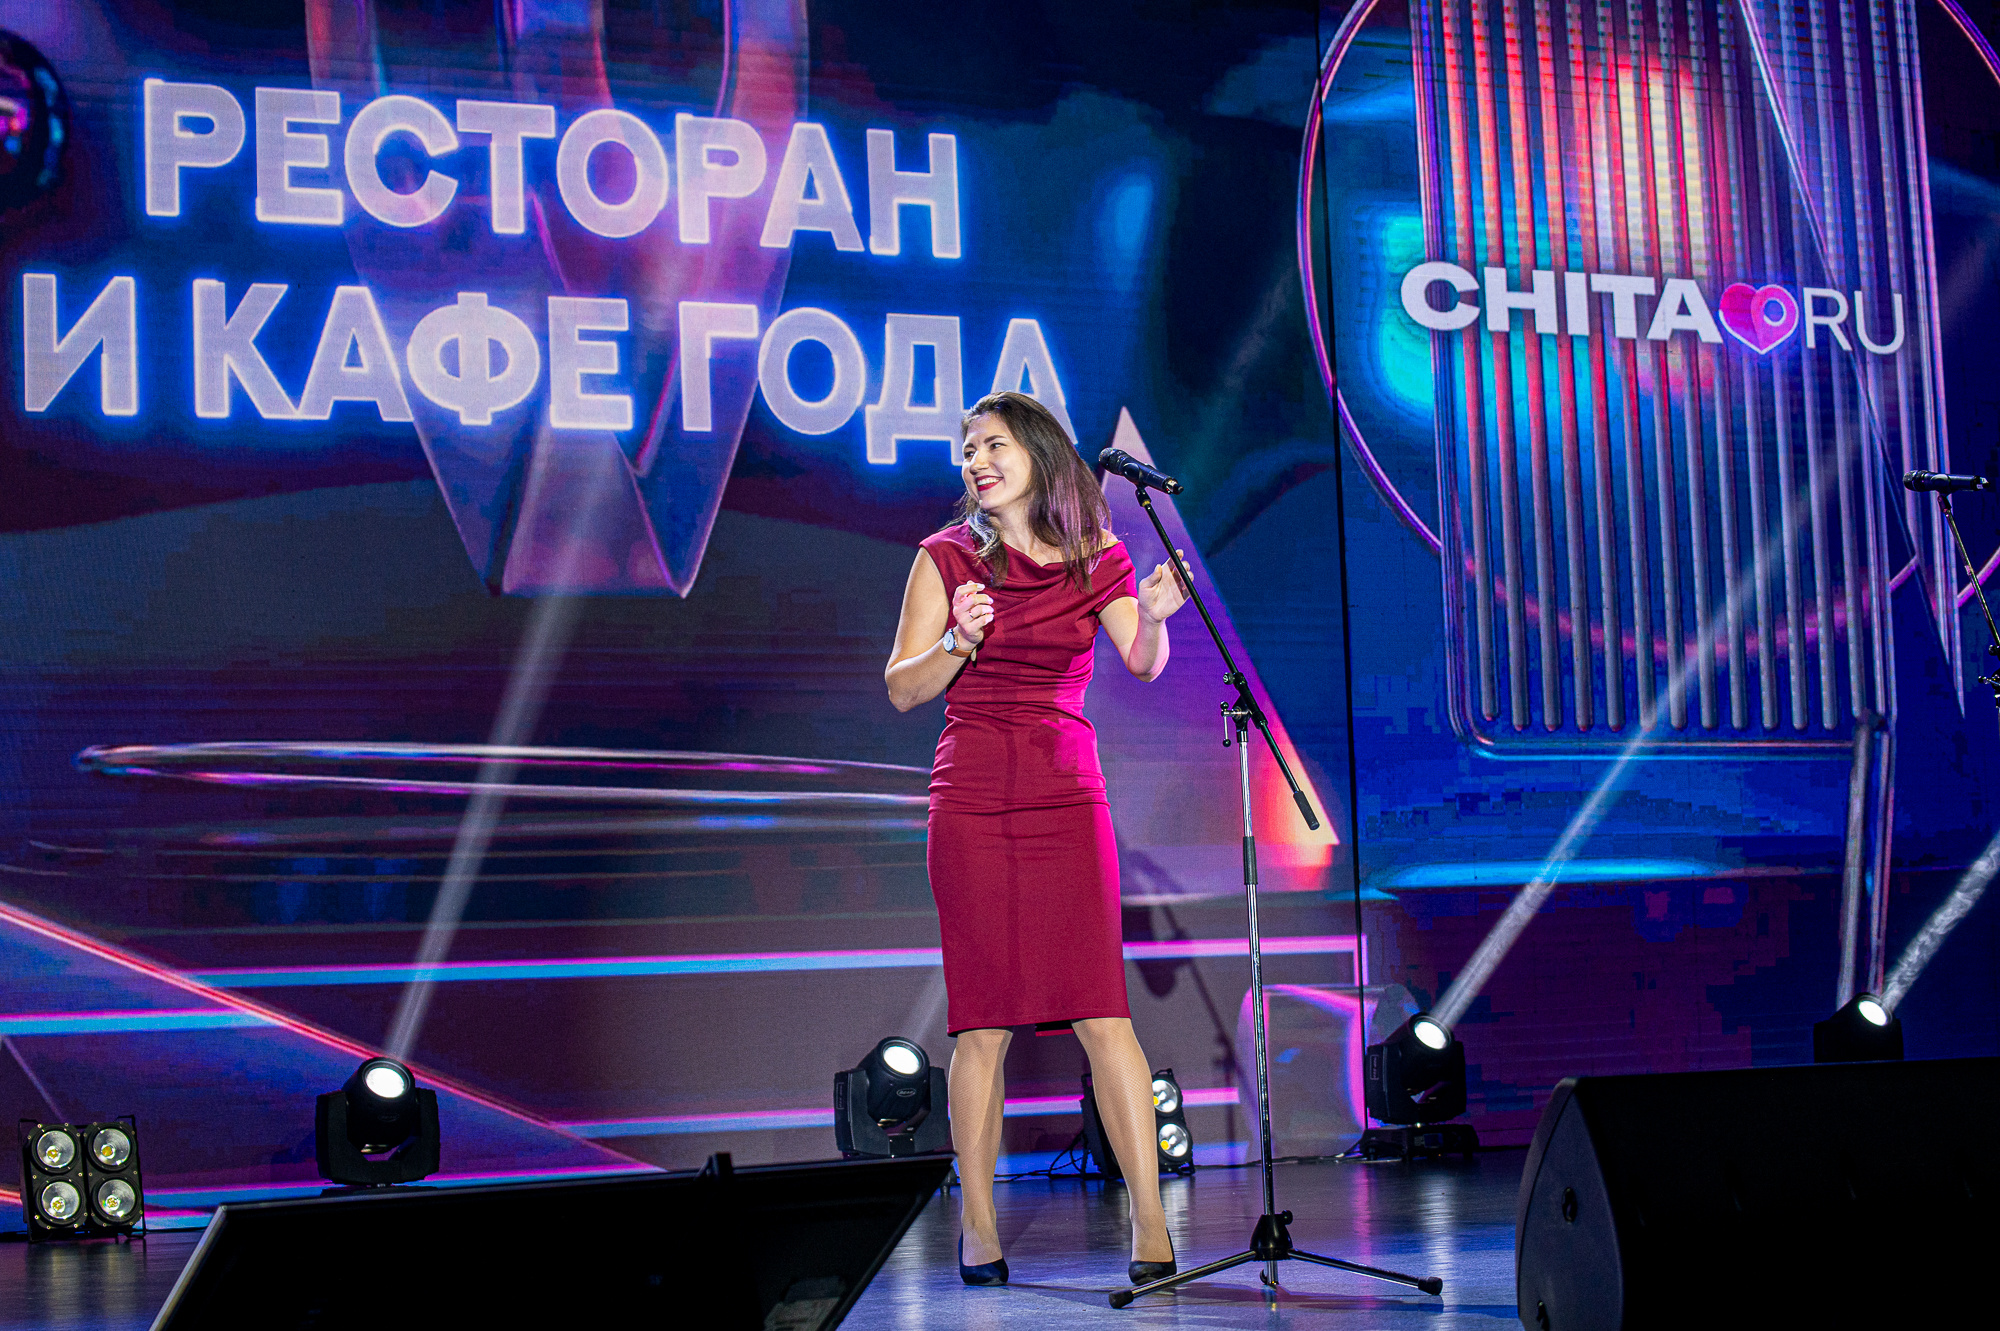 Блогер Татьяна Мирошникова, известная в Сети как Сельчанка